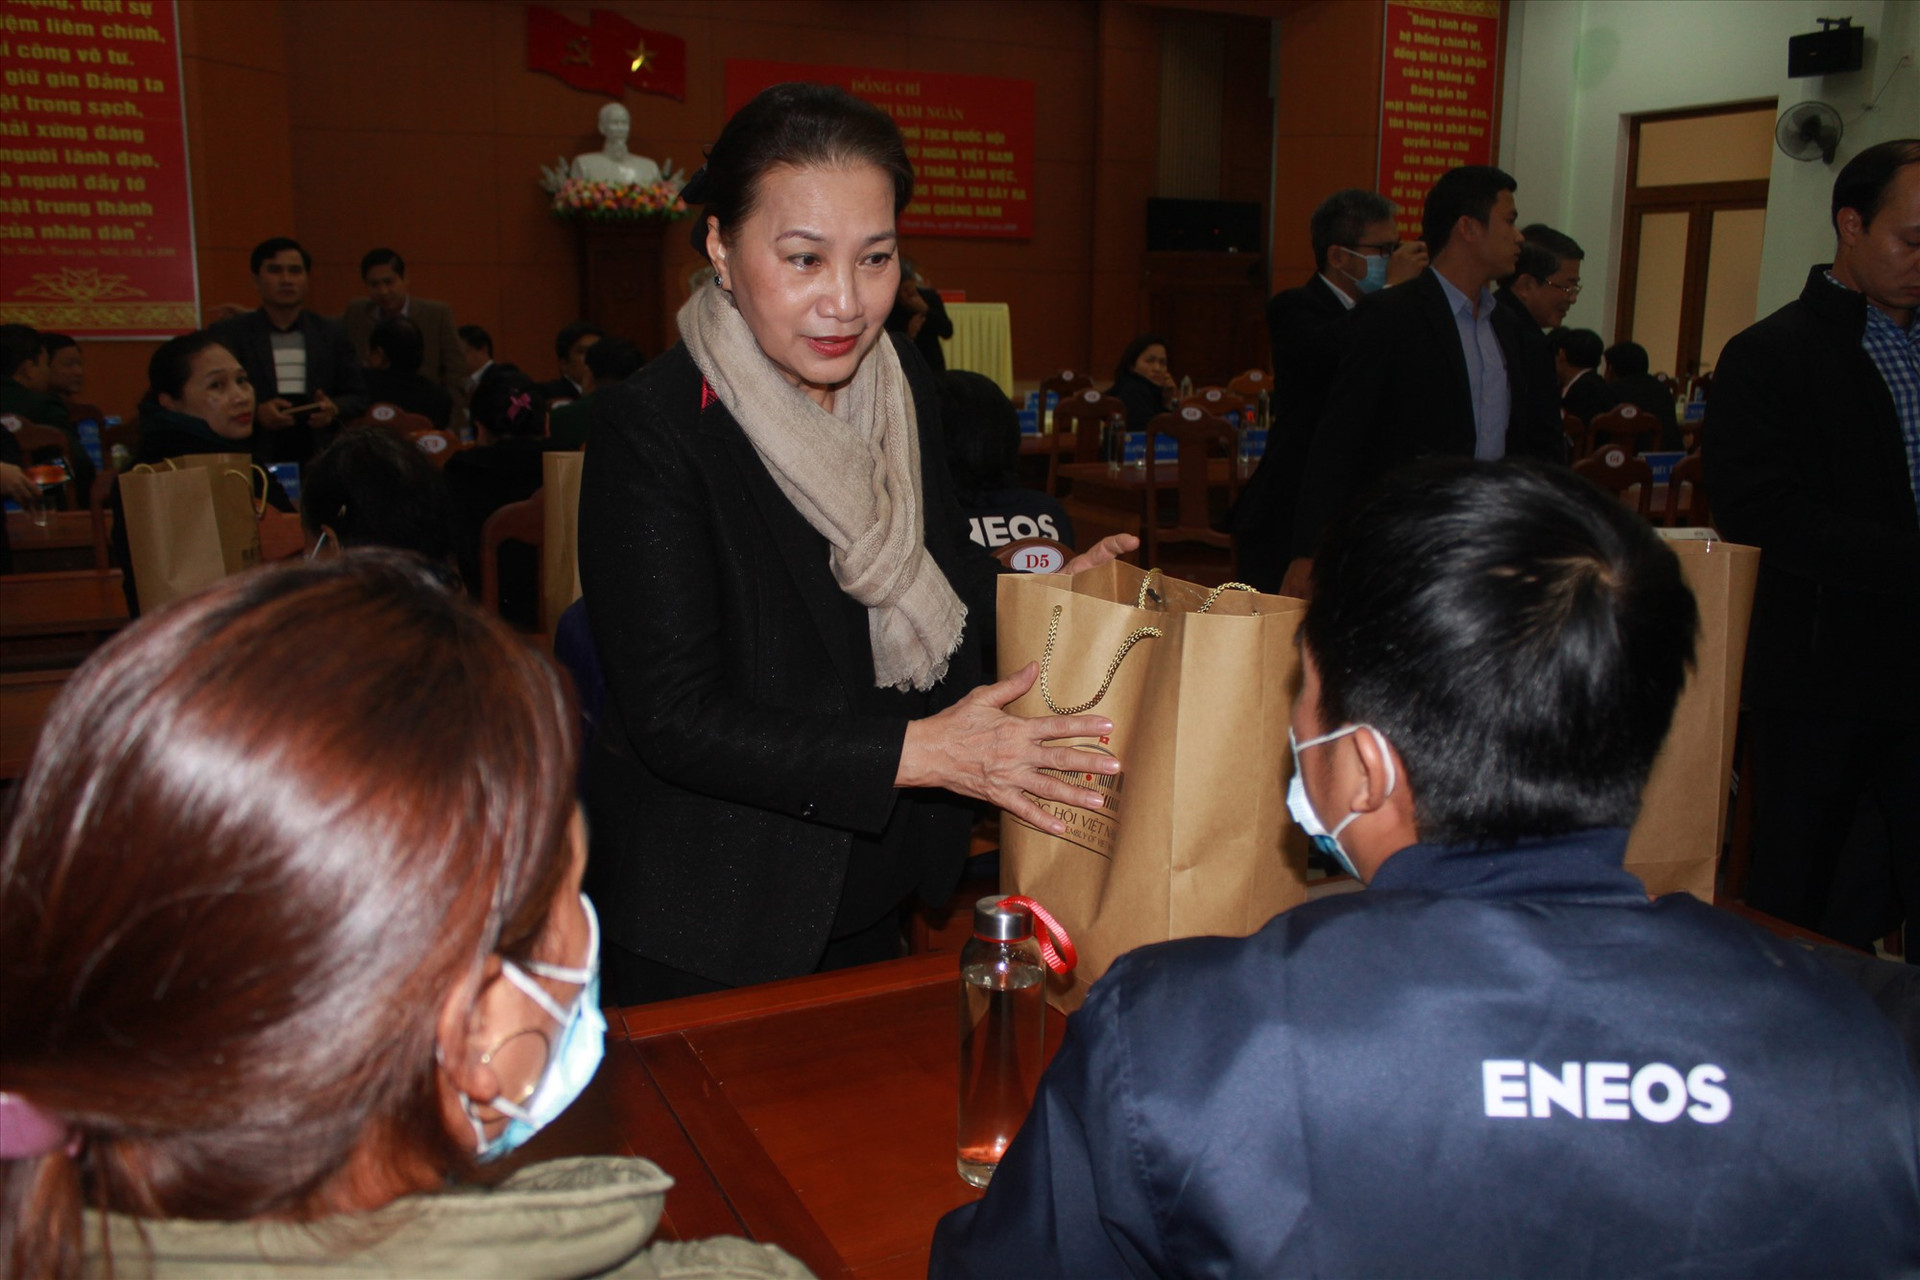 Đồng chí Nguyễn Thị Kim Ngân tặng quà, thăm hỏi các gia đình bị thiệt hại do thiên tai tại Phước Sơn. Ảnh: T.C